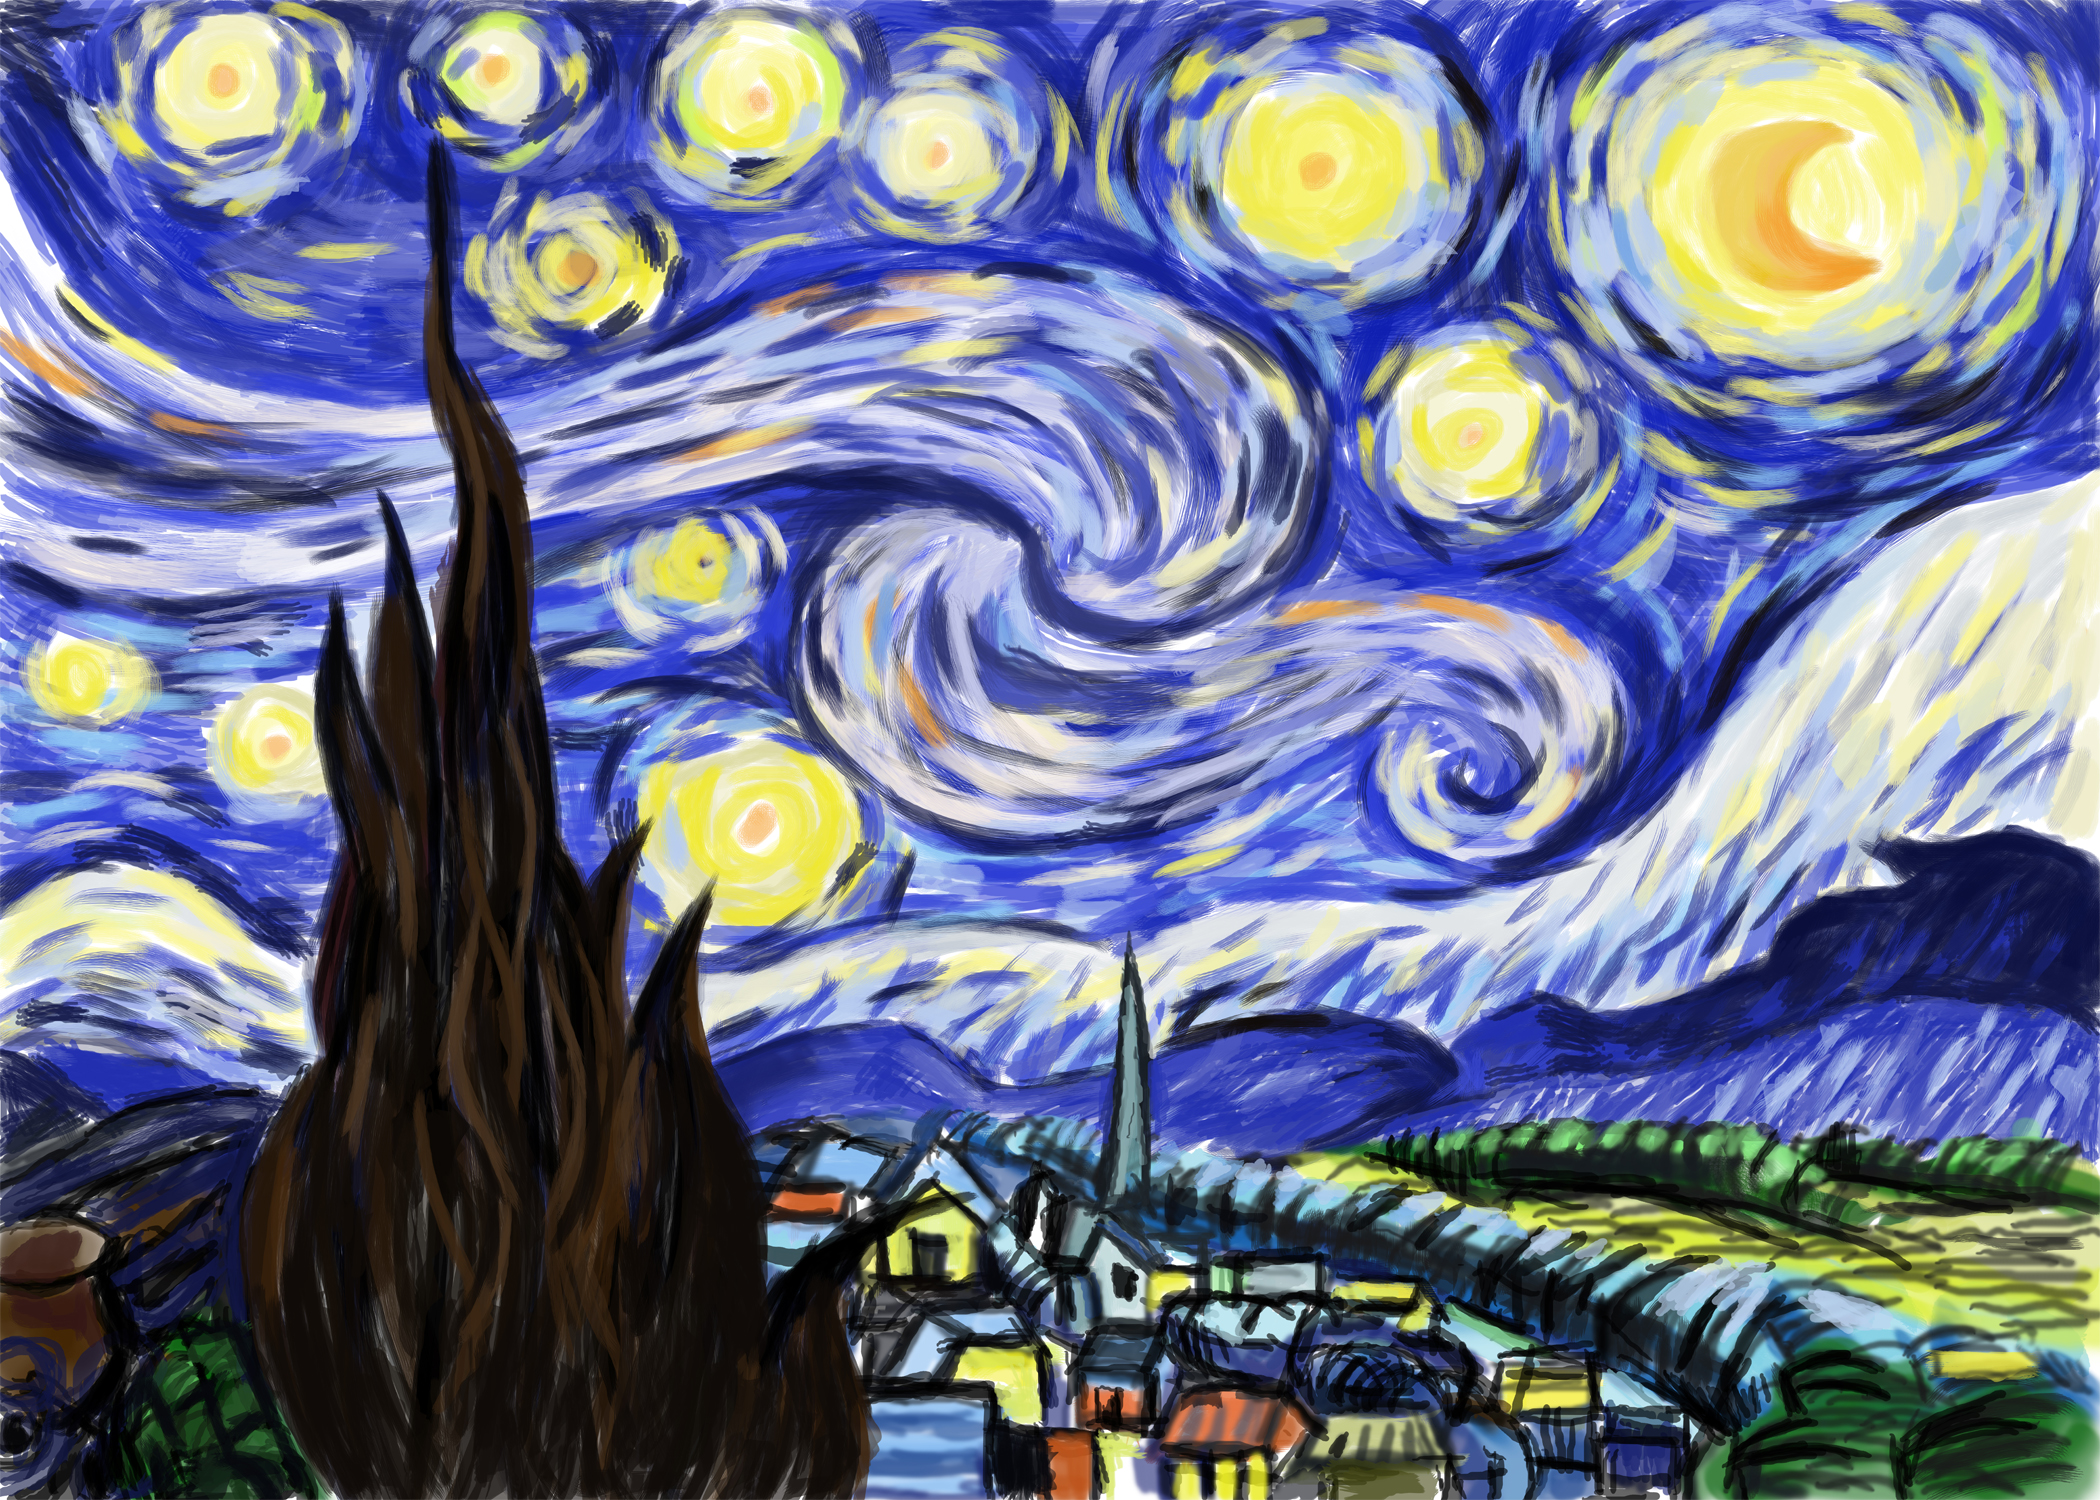 梵高星月夜原图 壁纸图片